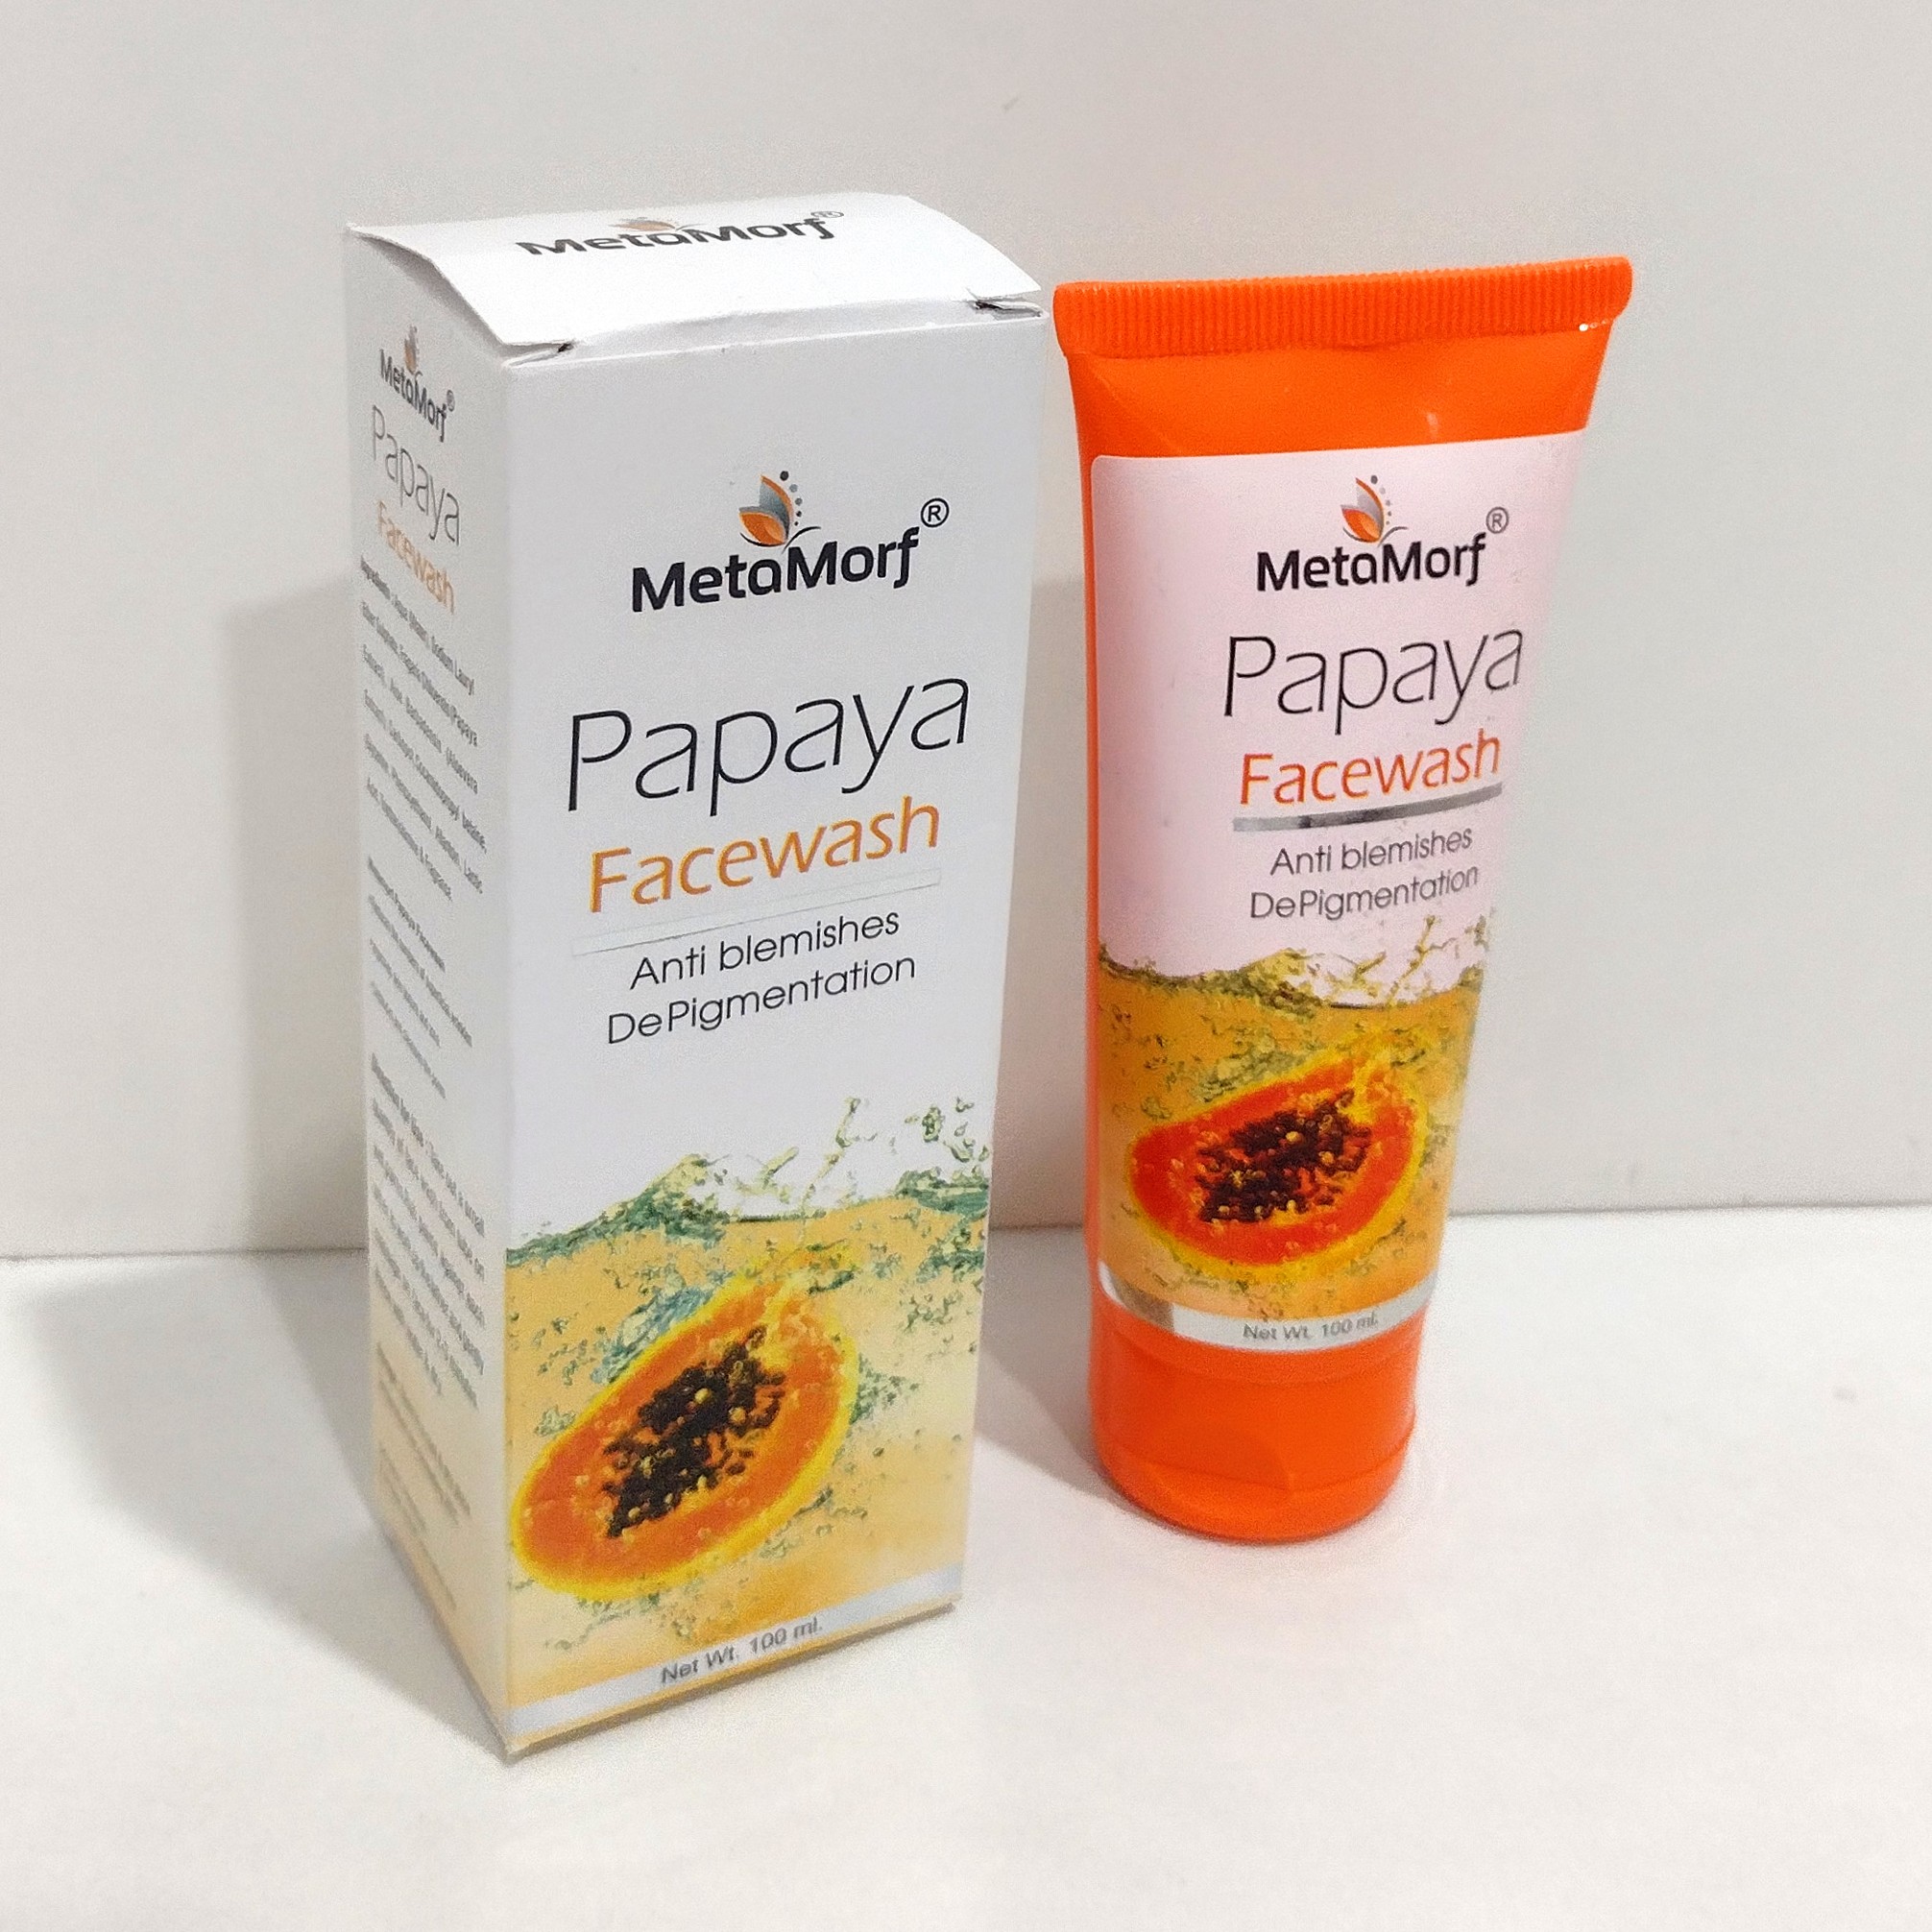 Metamorf Papaya Facewash